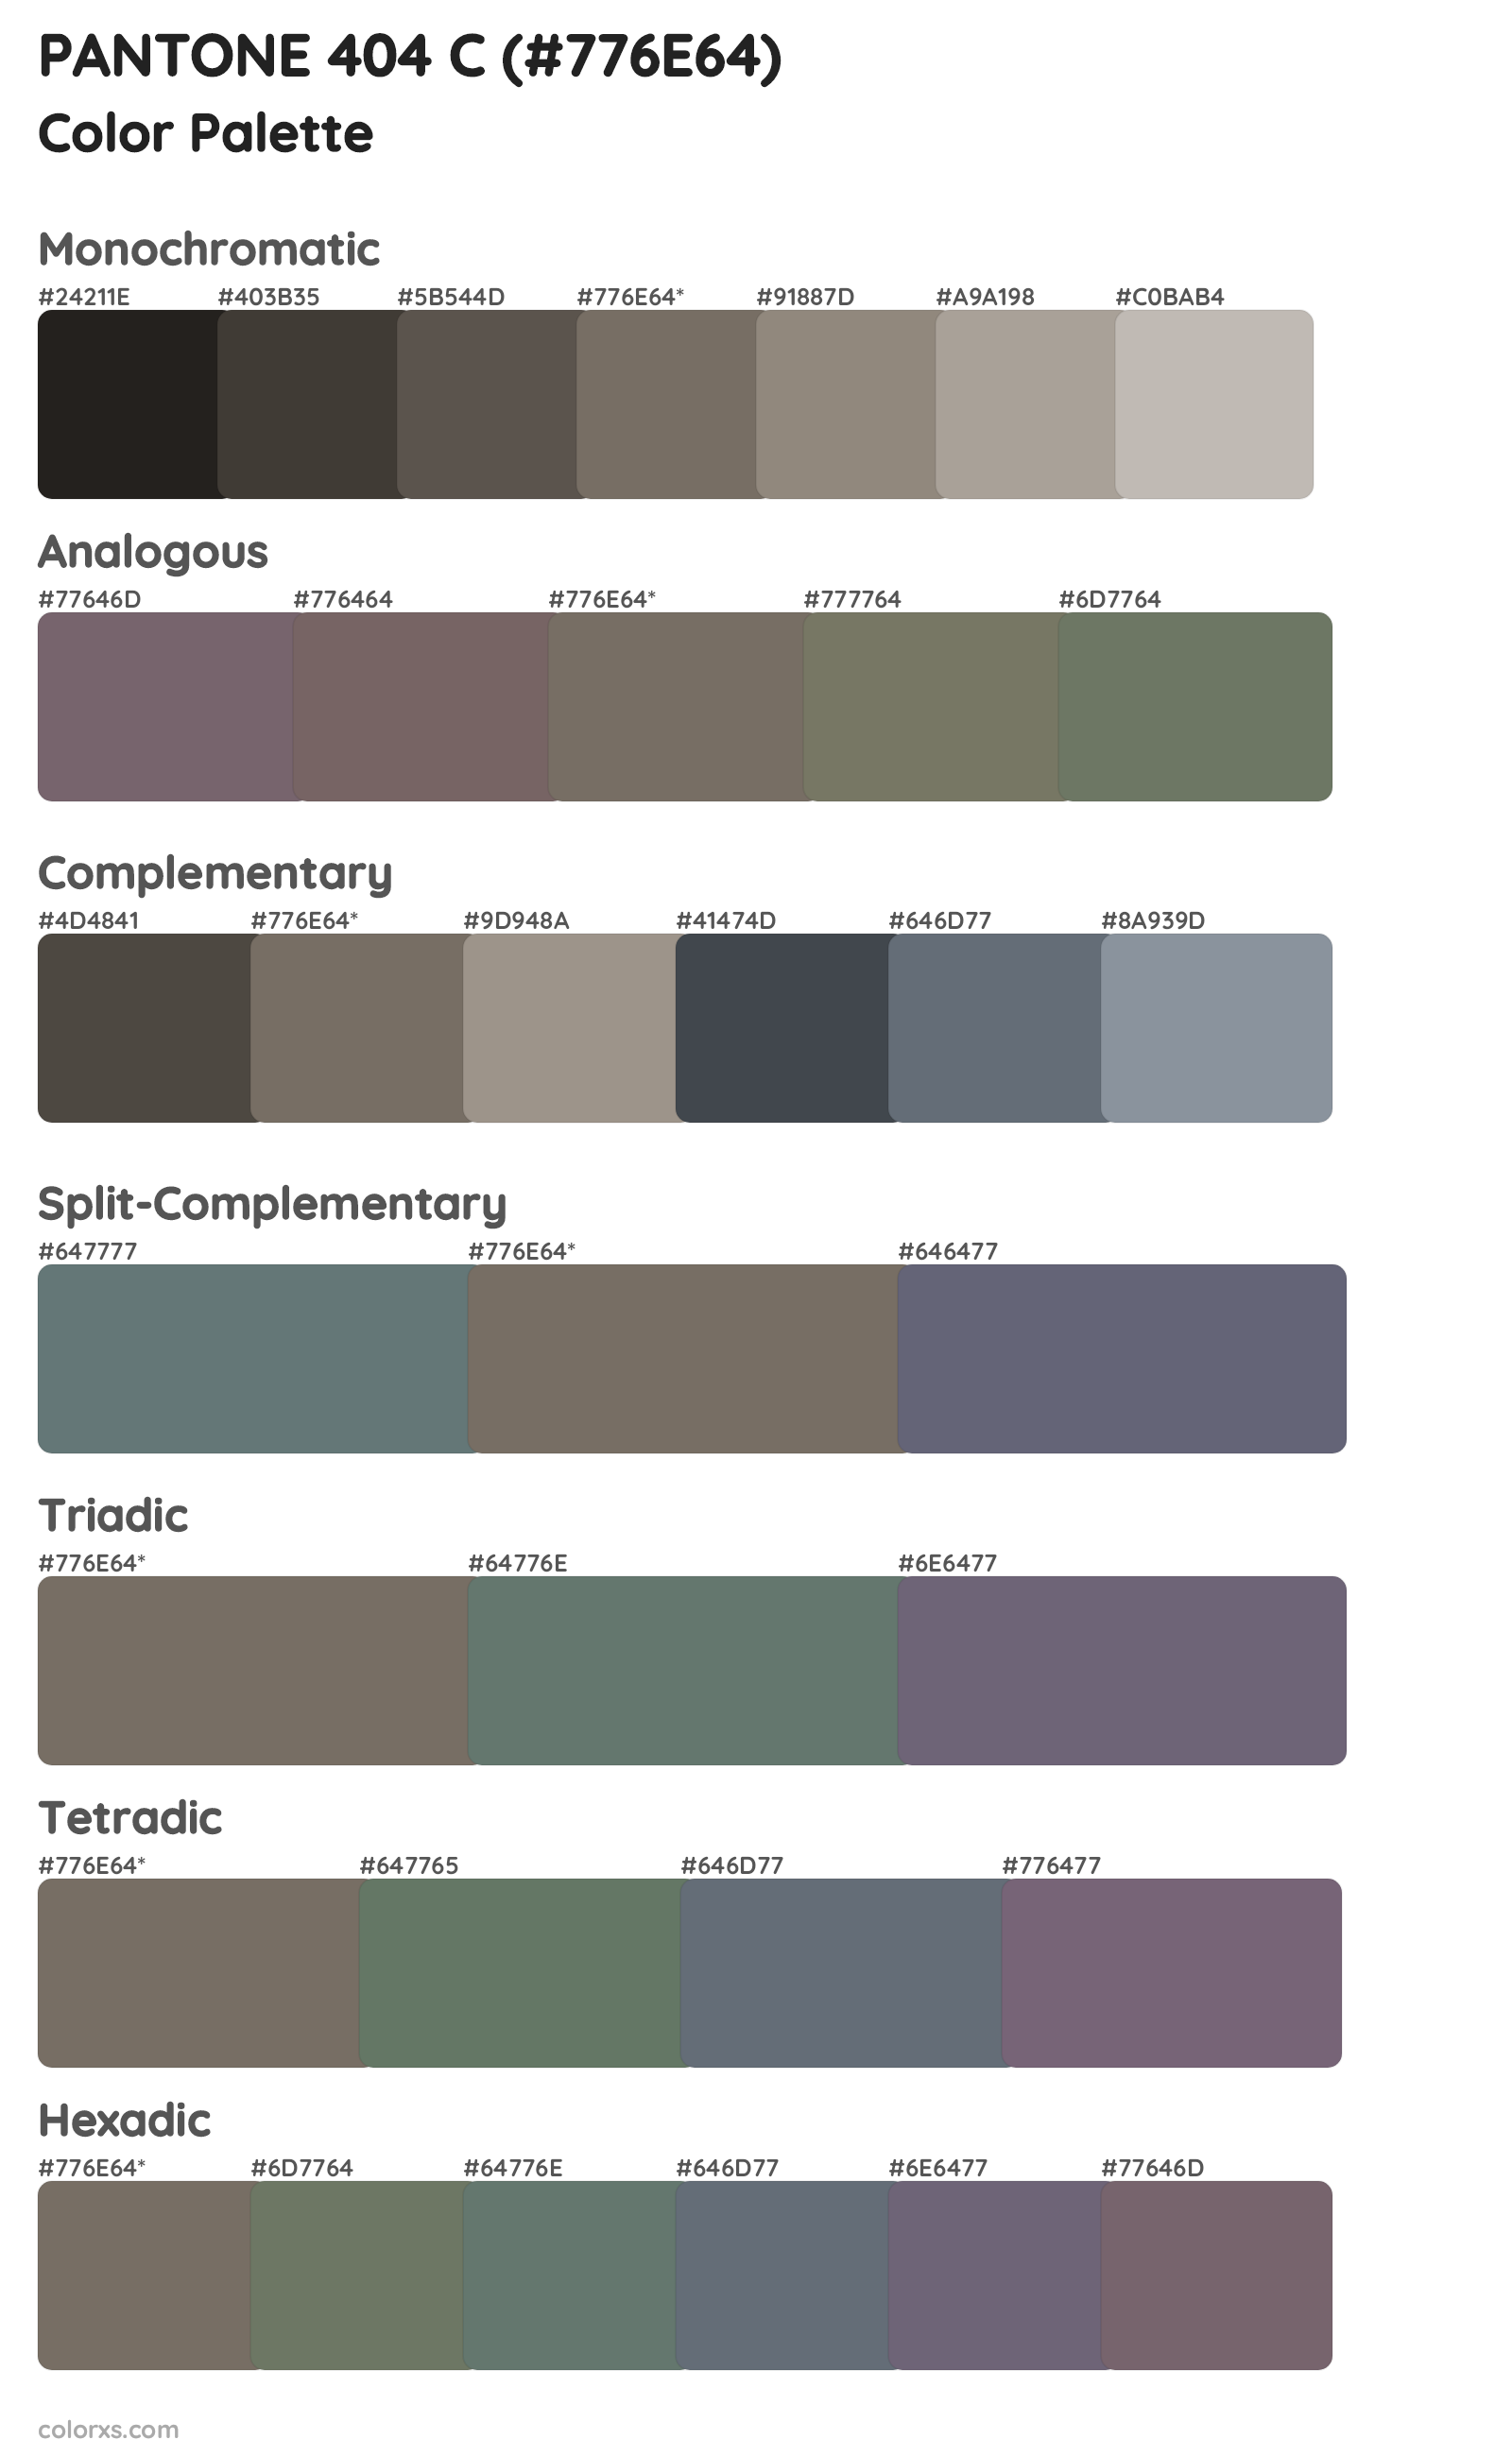 PANTONE 404 C Color Scheme Palettes